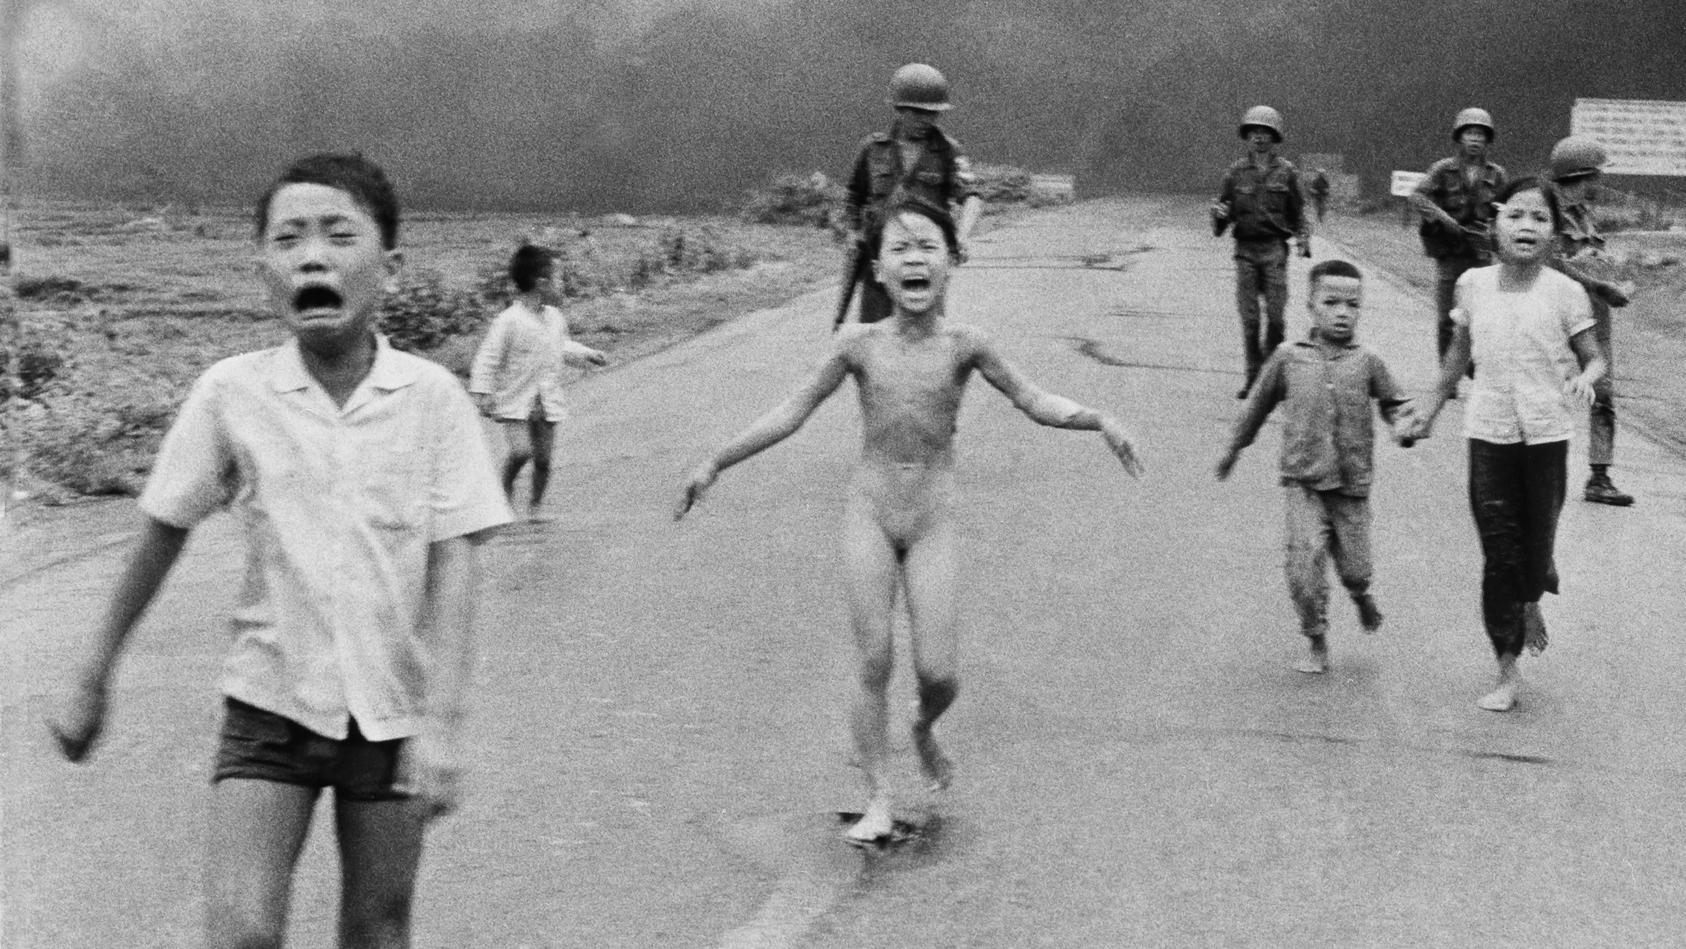 ARCHIV - 08.06.1972, Vietnam, Trang Bang: Die neunjährige Kim Phuc Phan Thi (M) flieht nackt mit ihren Brüdern und Cousins vor einem Napalm-Angriff. Es ist eine der denkwürdigsten Aufnahmen des 20. Jahrhunderts: Nick Ut drückt auf den Auslöser, als e